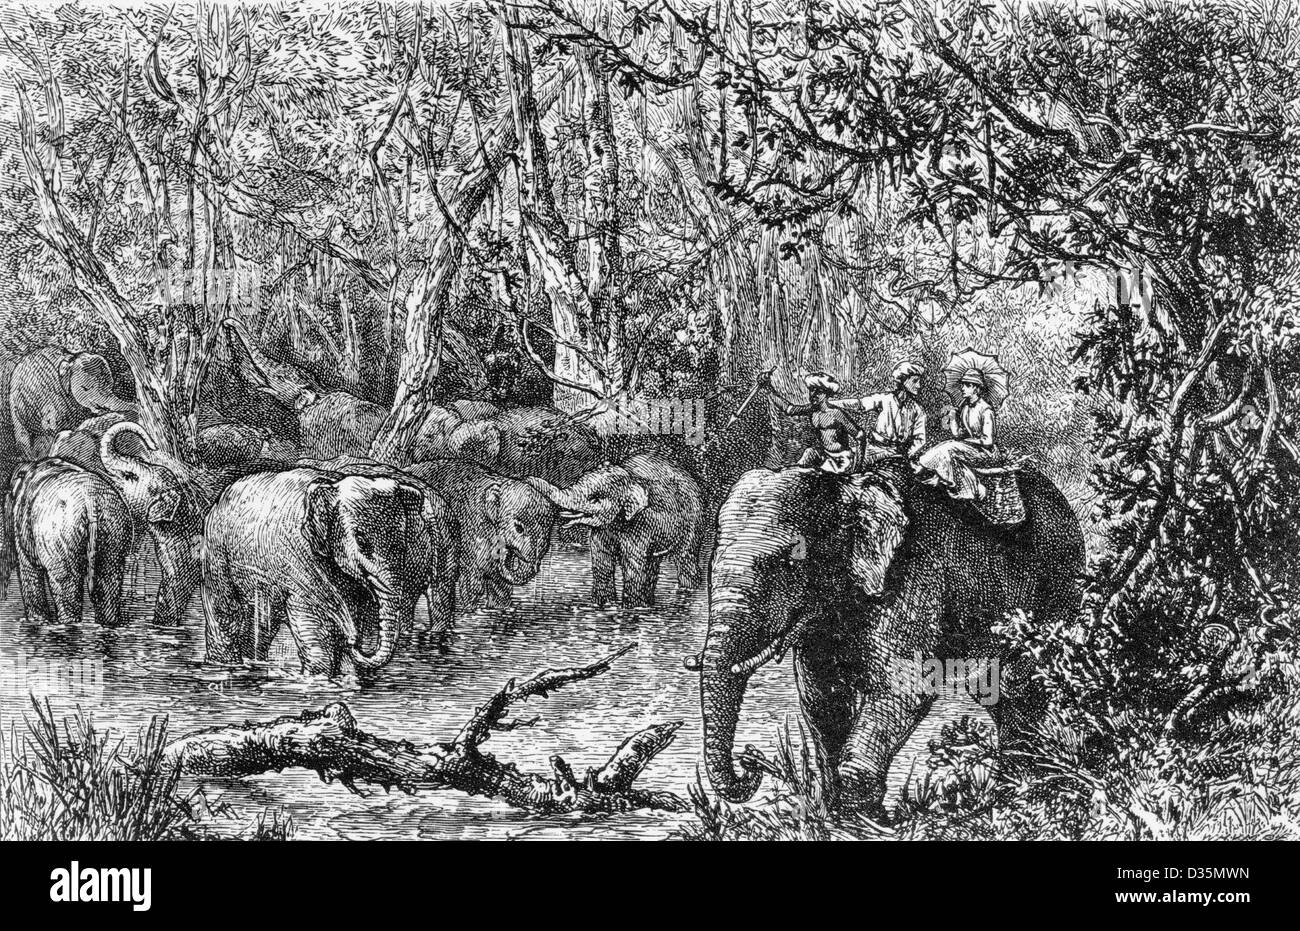 Erste Fahrt des Autors in Perak - Isabella L. Bird und zwei einheimische auf Elefanten, mit anderen Elefanten in Sümpfen, in Perak, Malaya, ca. 1883 Stockfoto